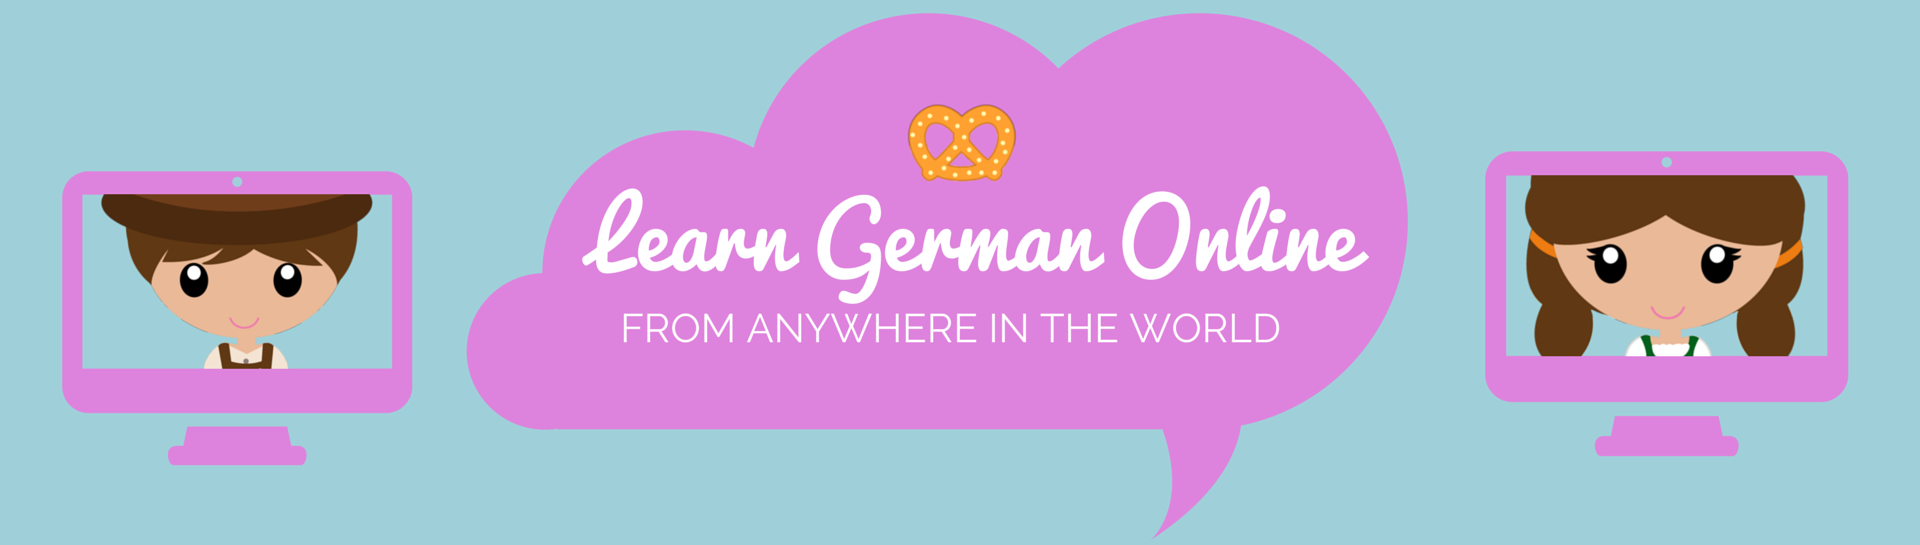 Learn German Online - German Made Easy